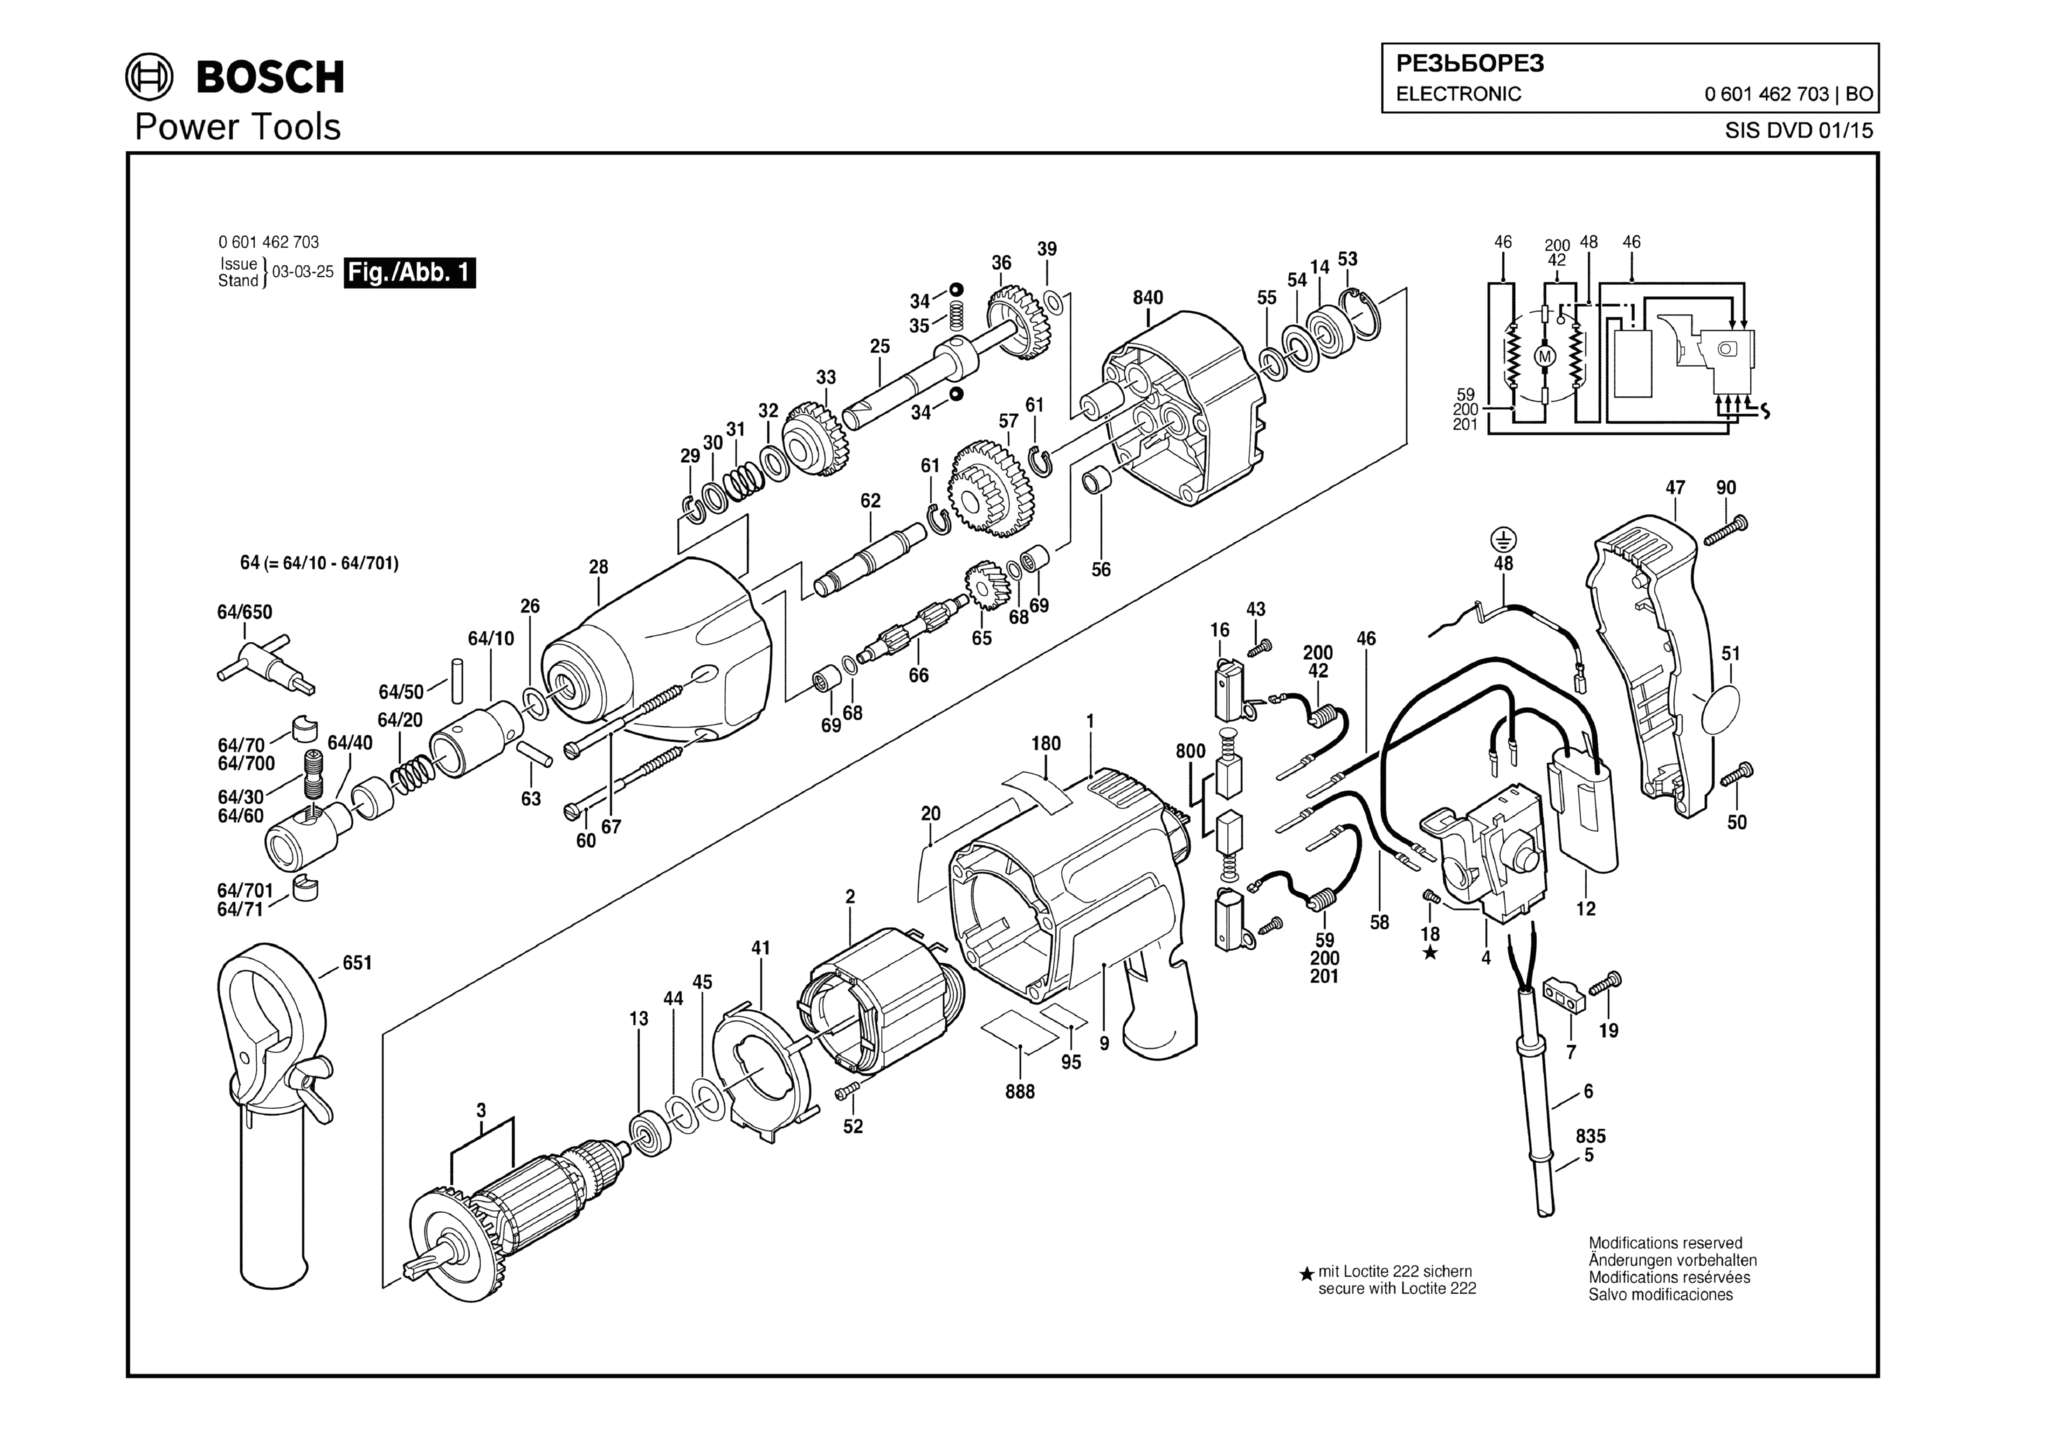 Запчасти, схема и деталировка Bosch ELECTRONIC (ТИП 0601462703)